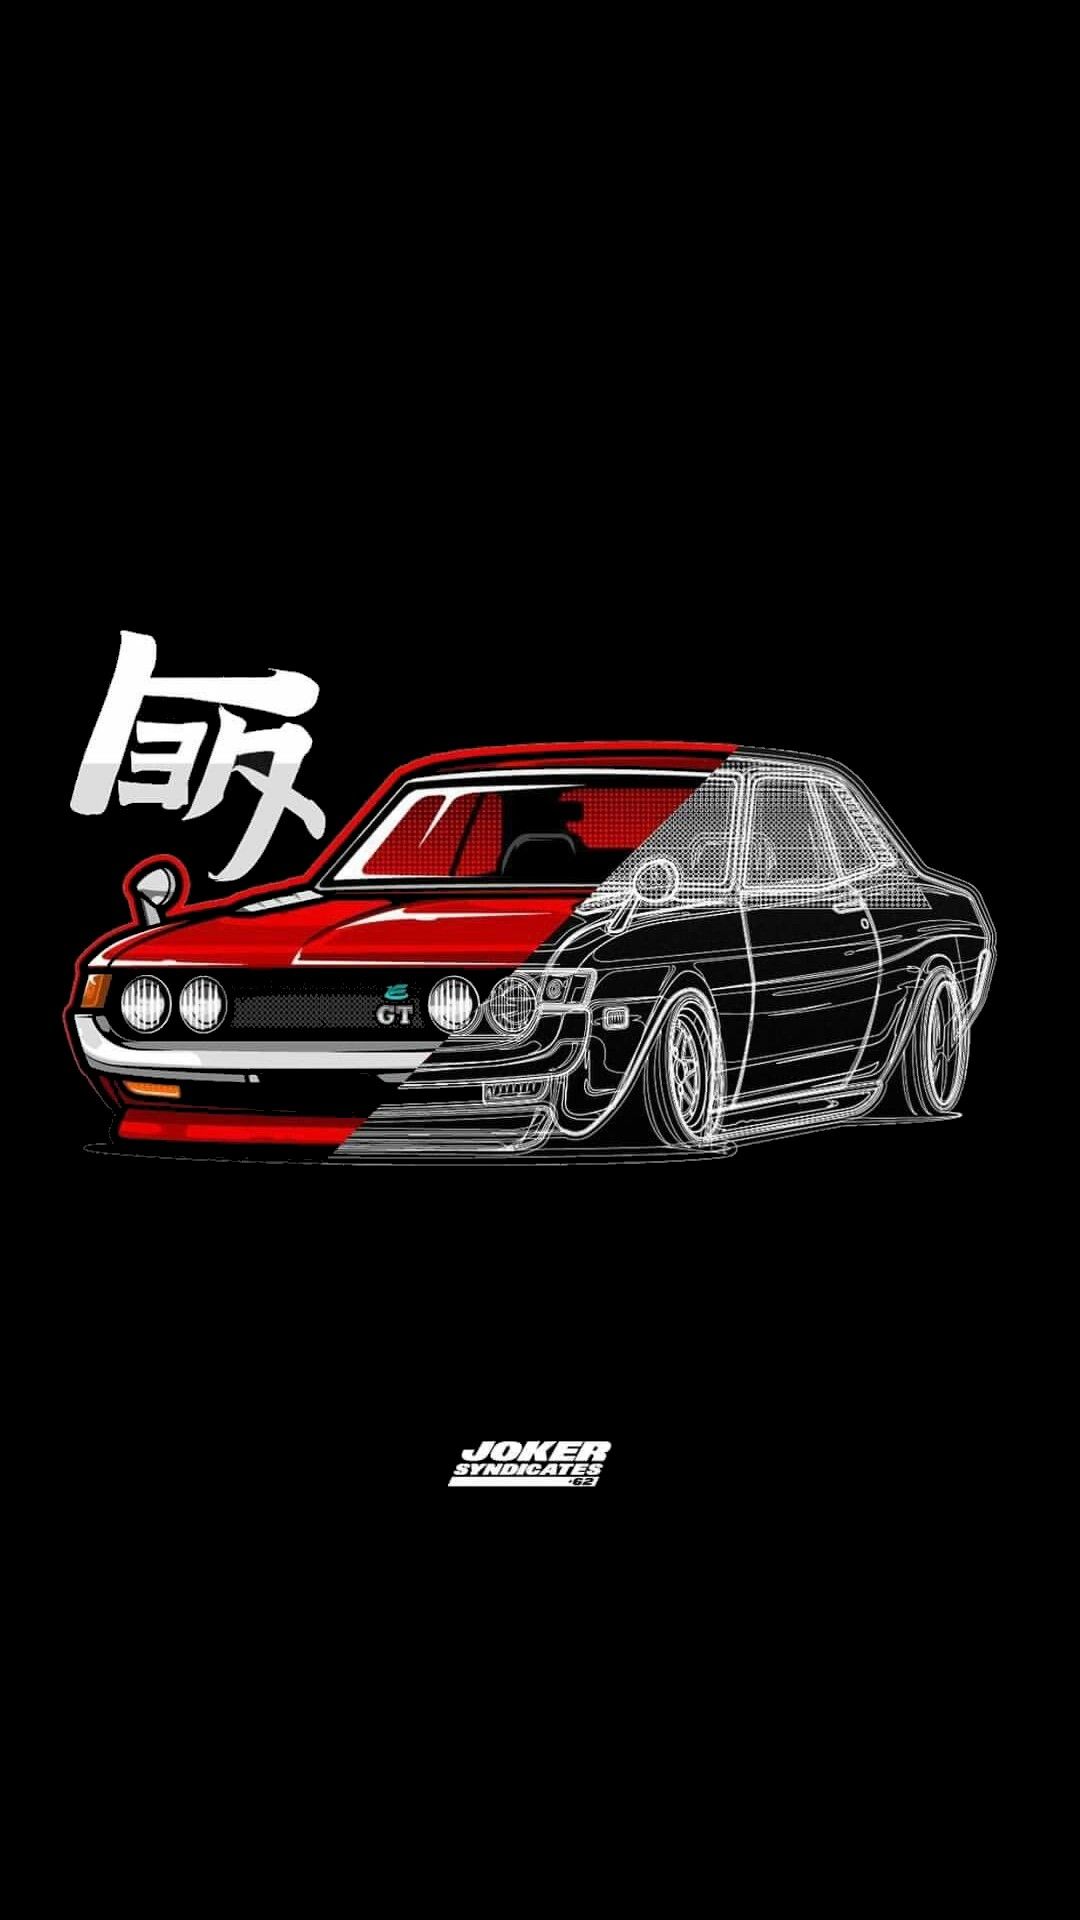 Japanese Cars Wallpaper